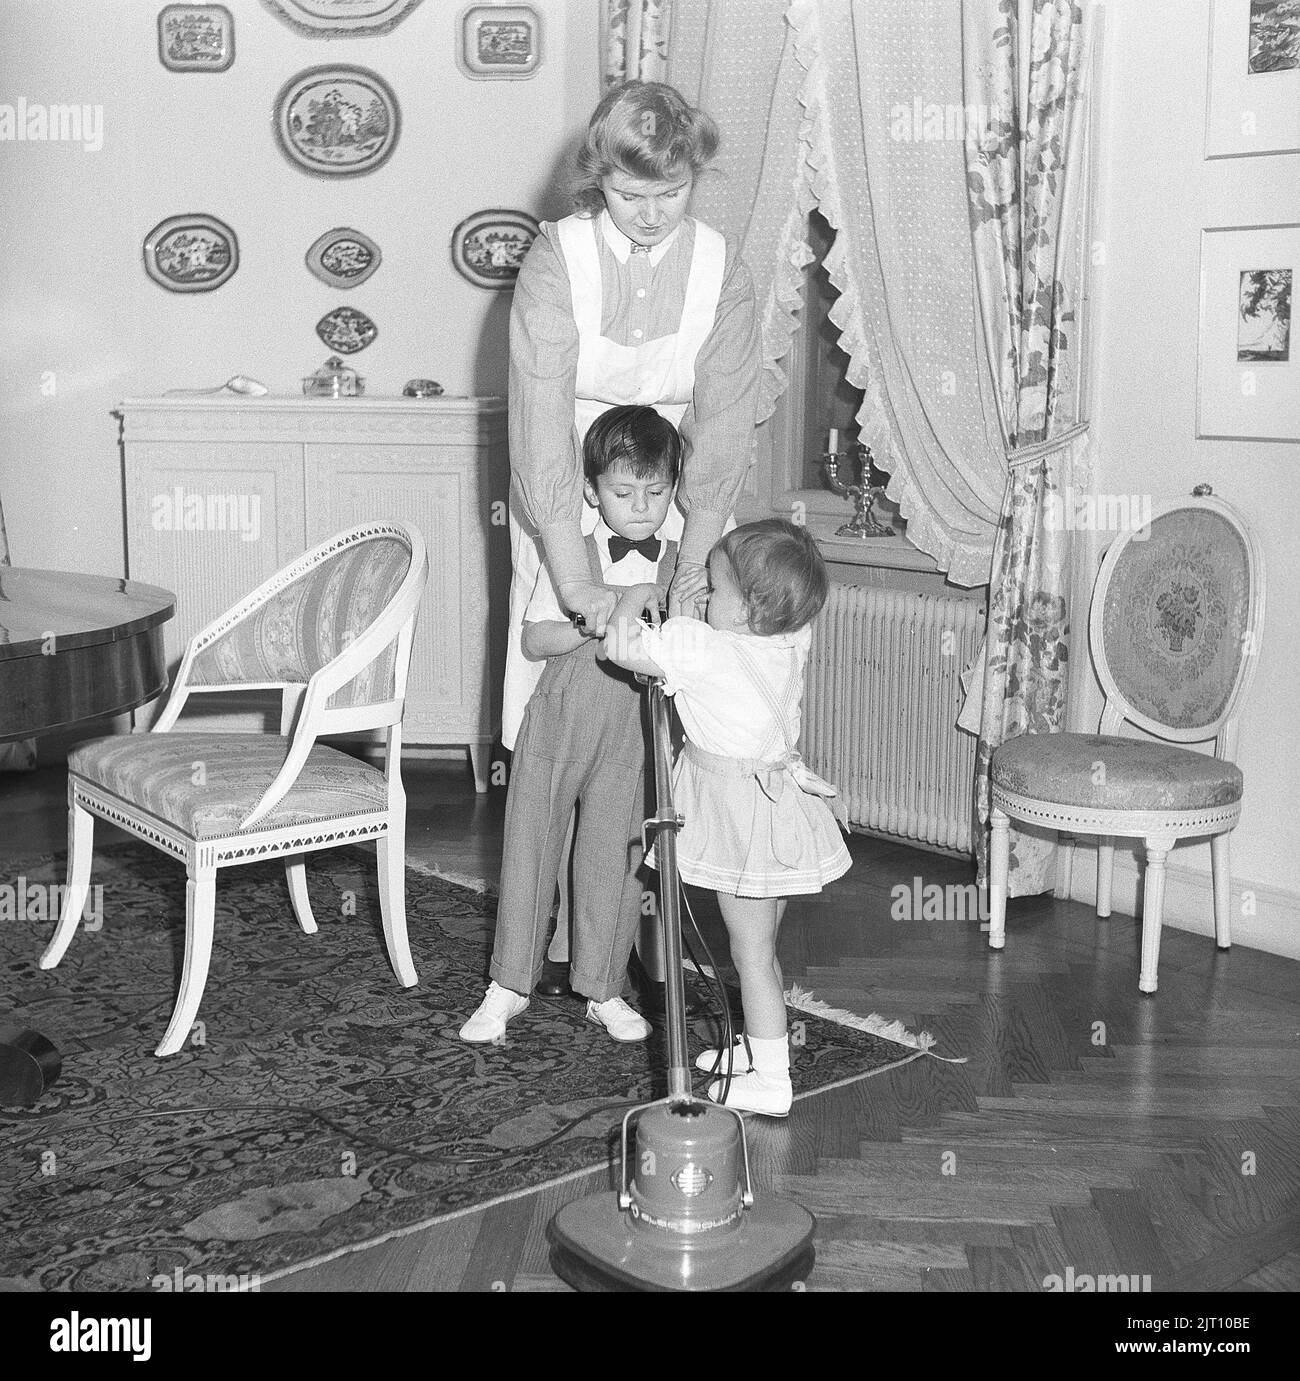 Zimmermädchen im Jahr 1940s. Eine junge Frau, die in einem Haus als Dienstmädchen arbeitet und durch das Aussehen davon auch das Kindermädchen, wie lässt sie spielen und die Maschine ausprobieren, die gemacht wird, um die Böden zu polieren. Schweden 1947 Kristoffersson Ref. X147-1 Stockfoto